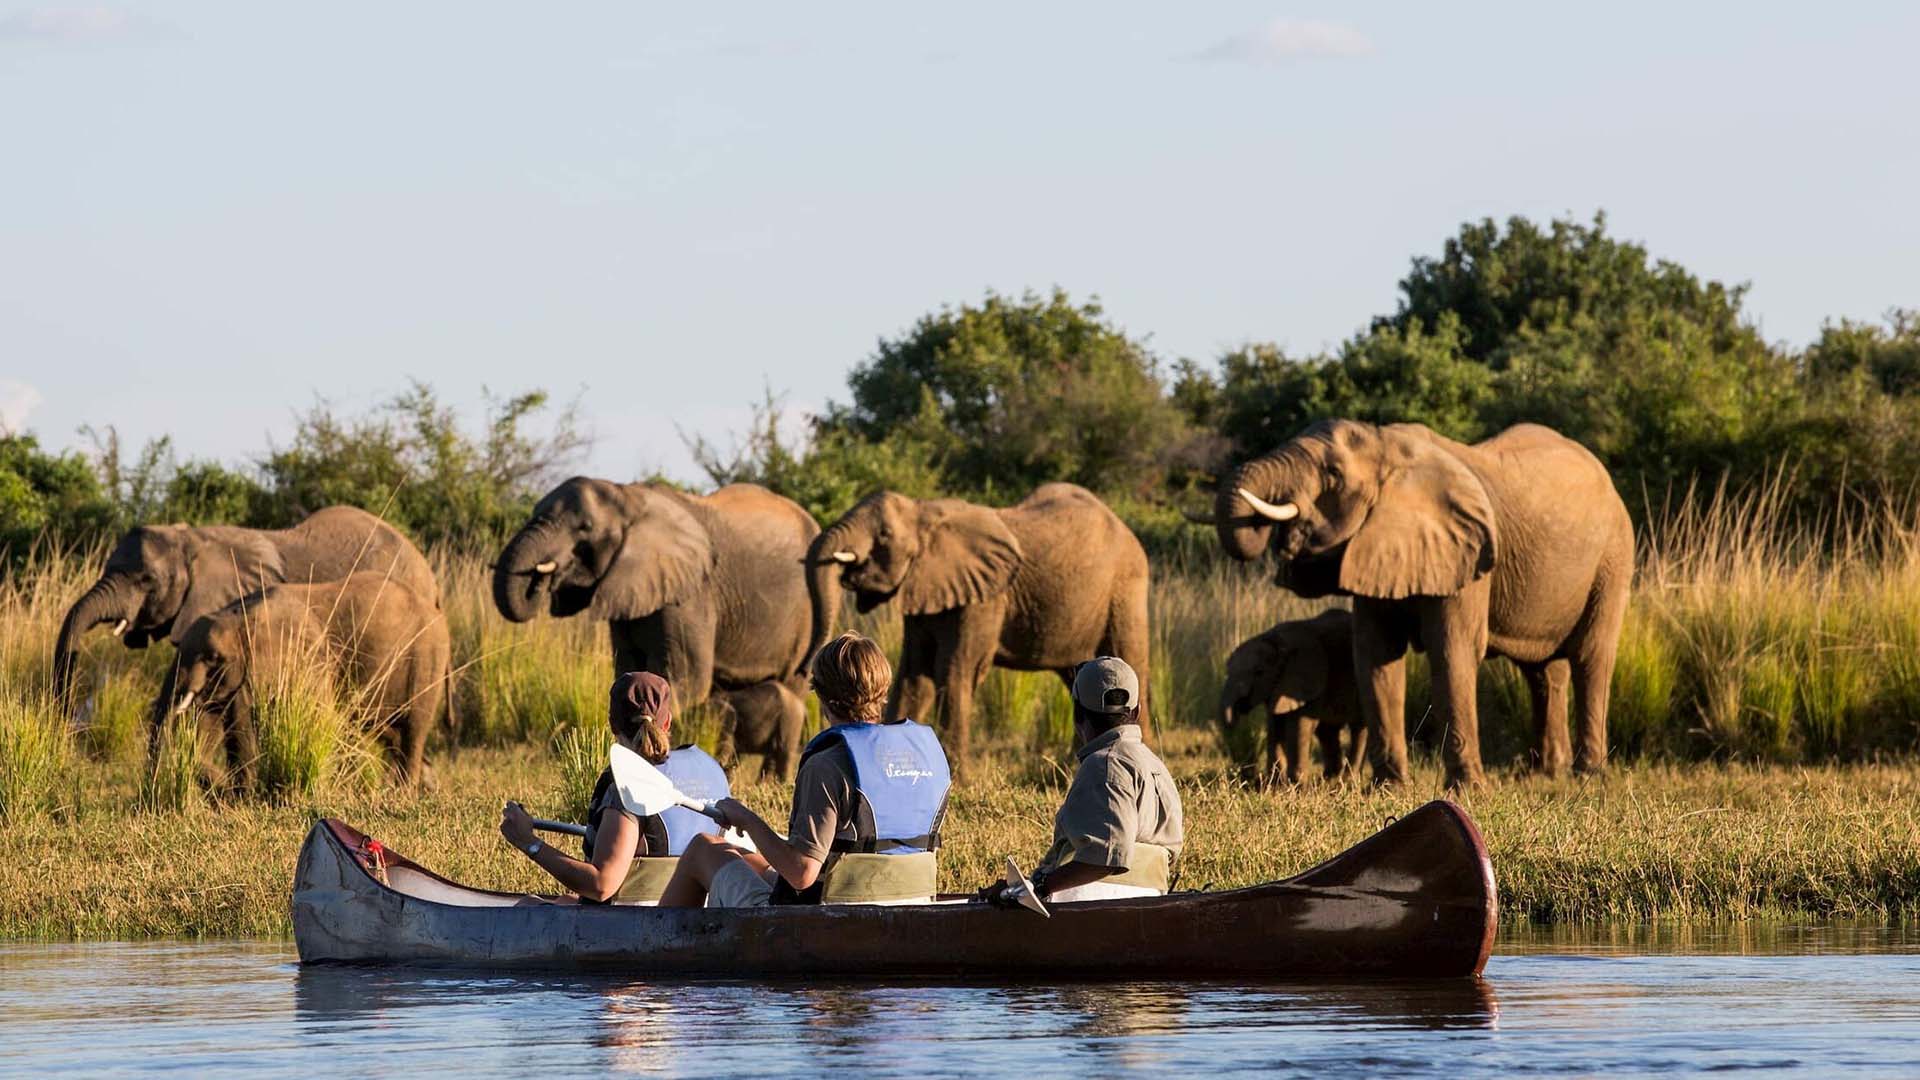 safari in canoa nel Lower Zambezi vicino a una mandria di elefanti